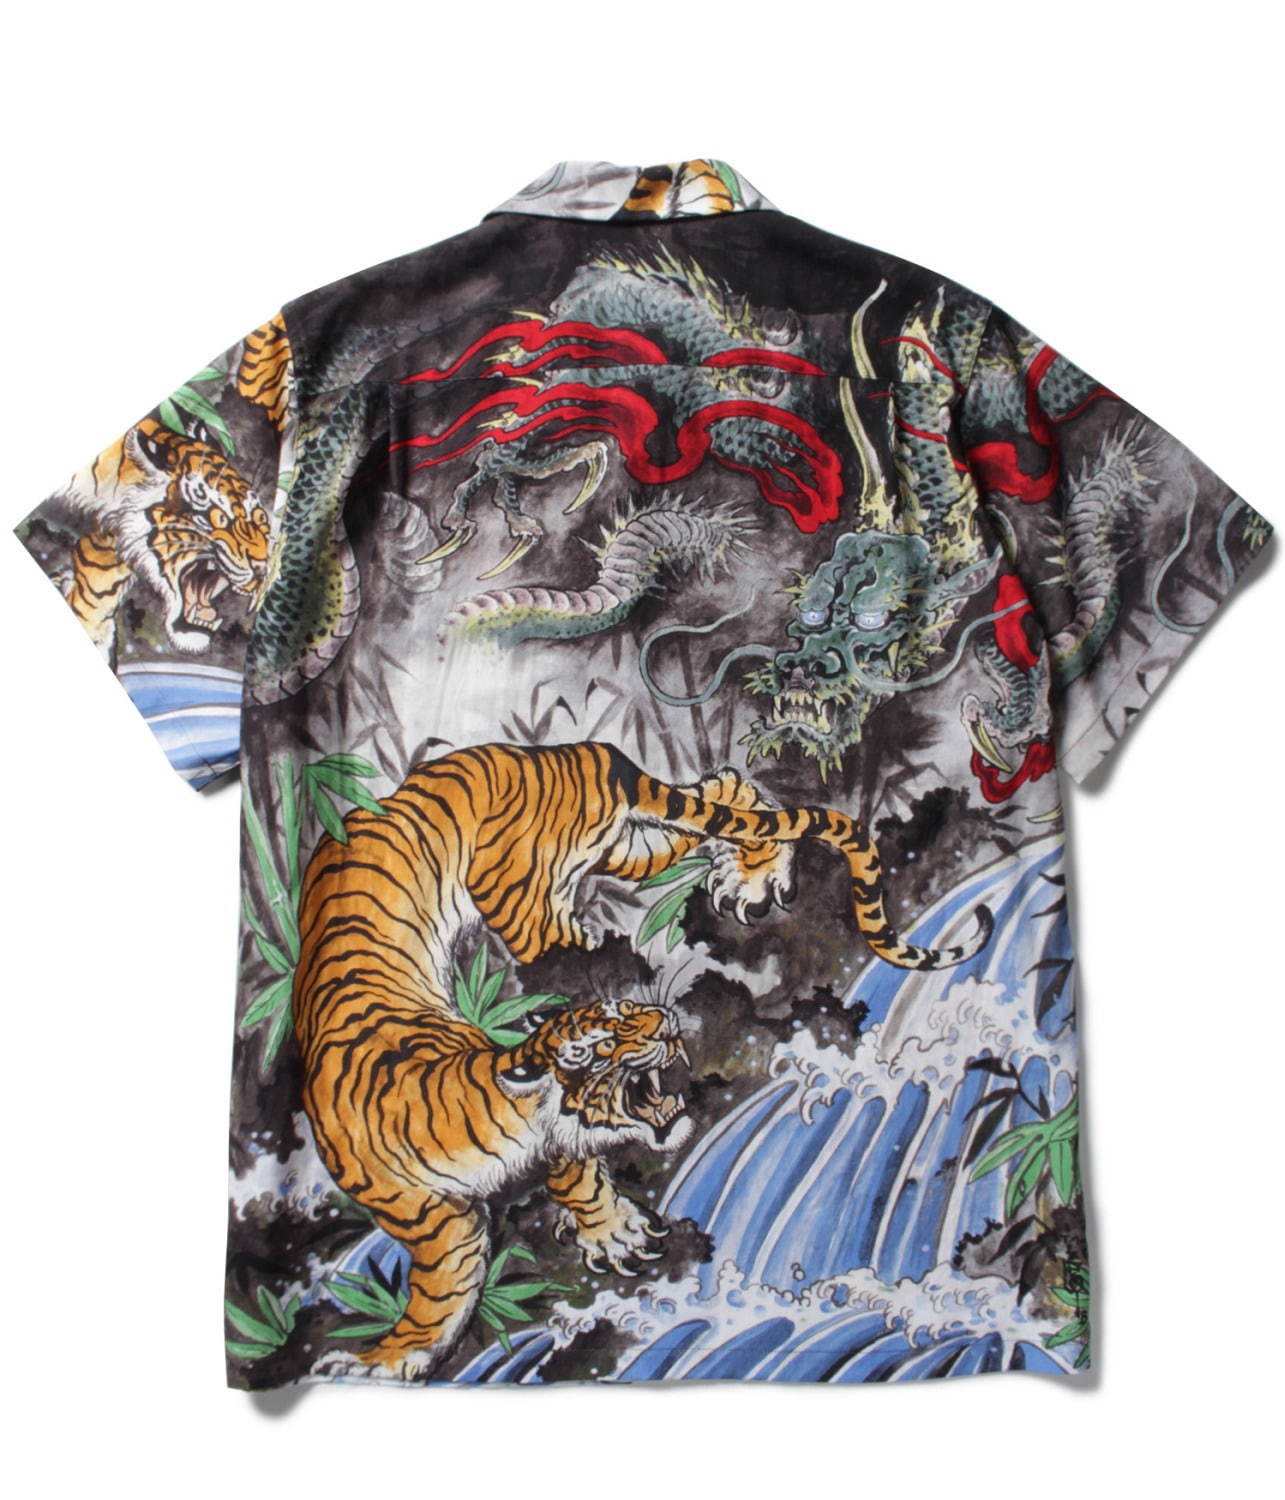 ワコマリア“虎”や“龍”を描いたシャツやスイムショーツ、タトゥー 